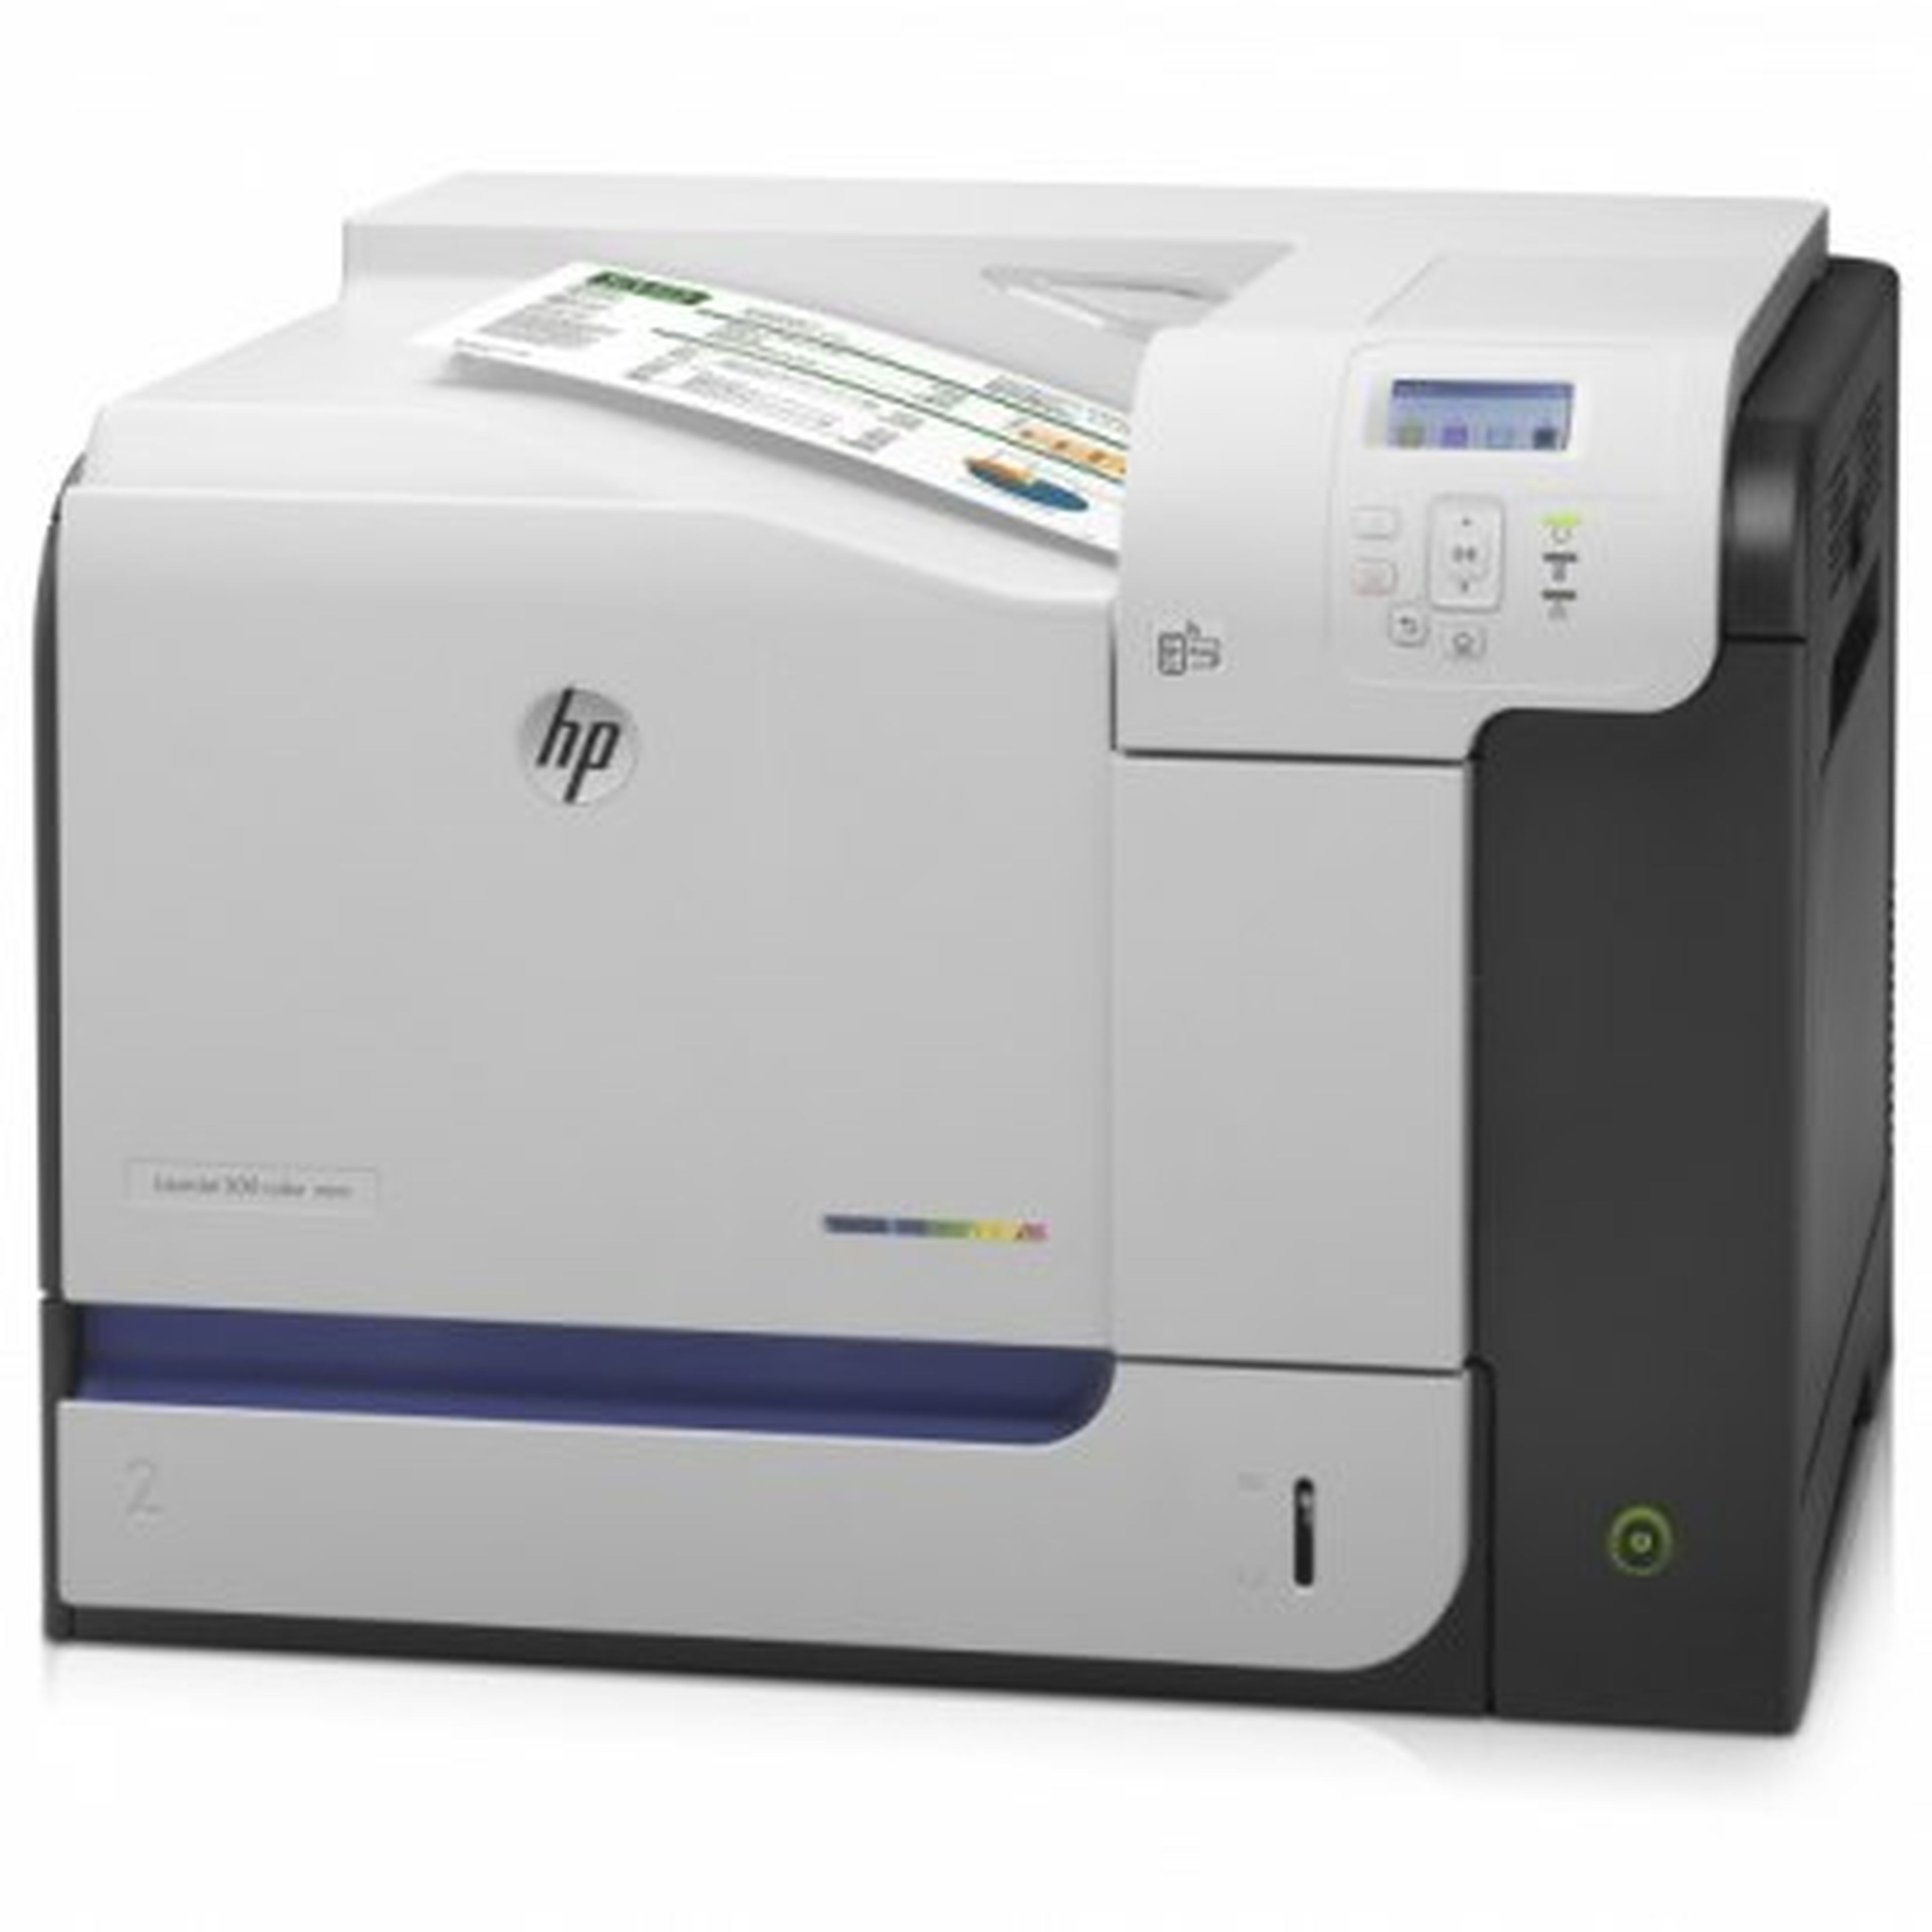 HP presenta sus nuevas impresoras multifunción para empresas